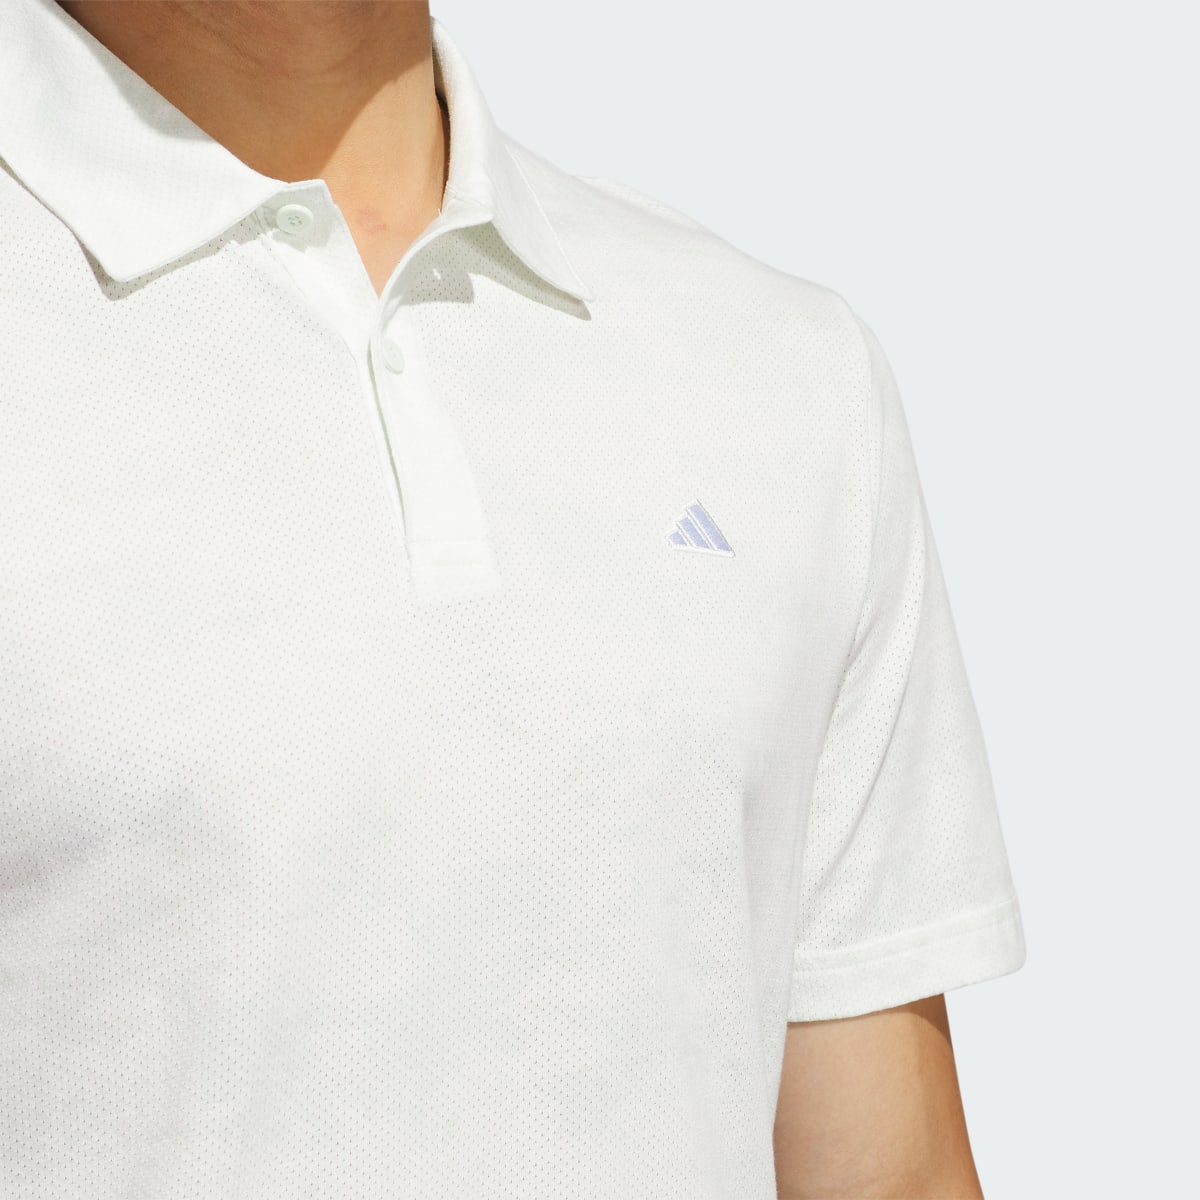 Adidas Go-To Printed Mesh Polo Shirt. 7